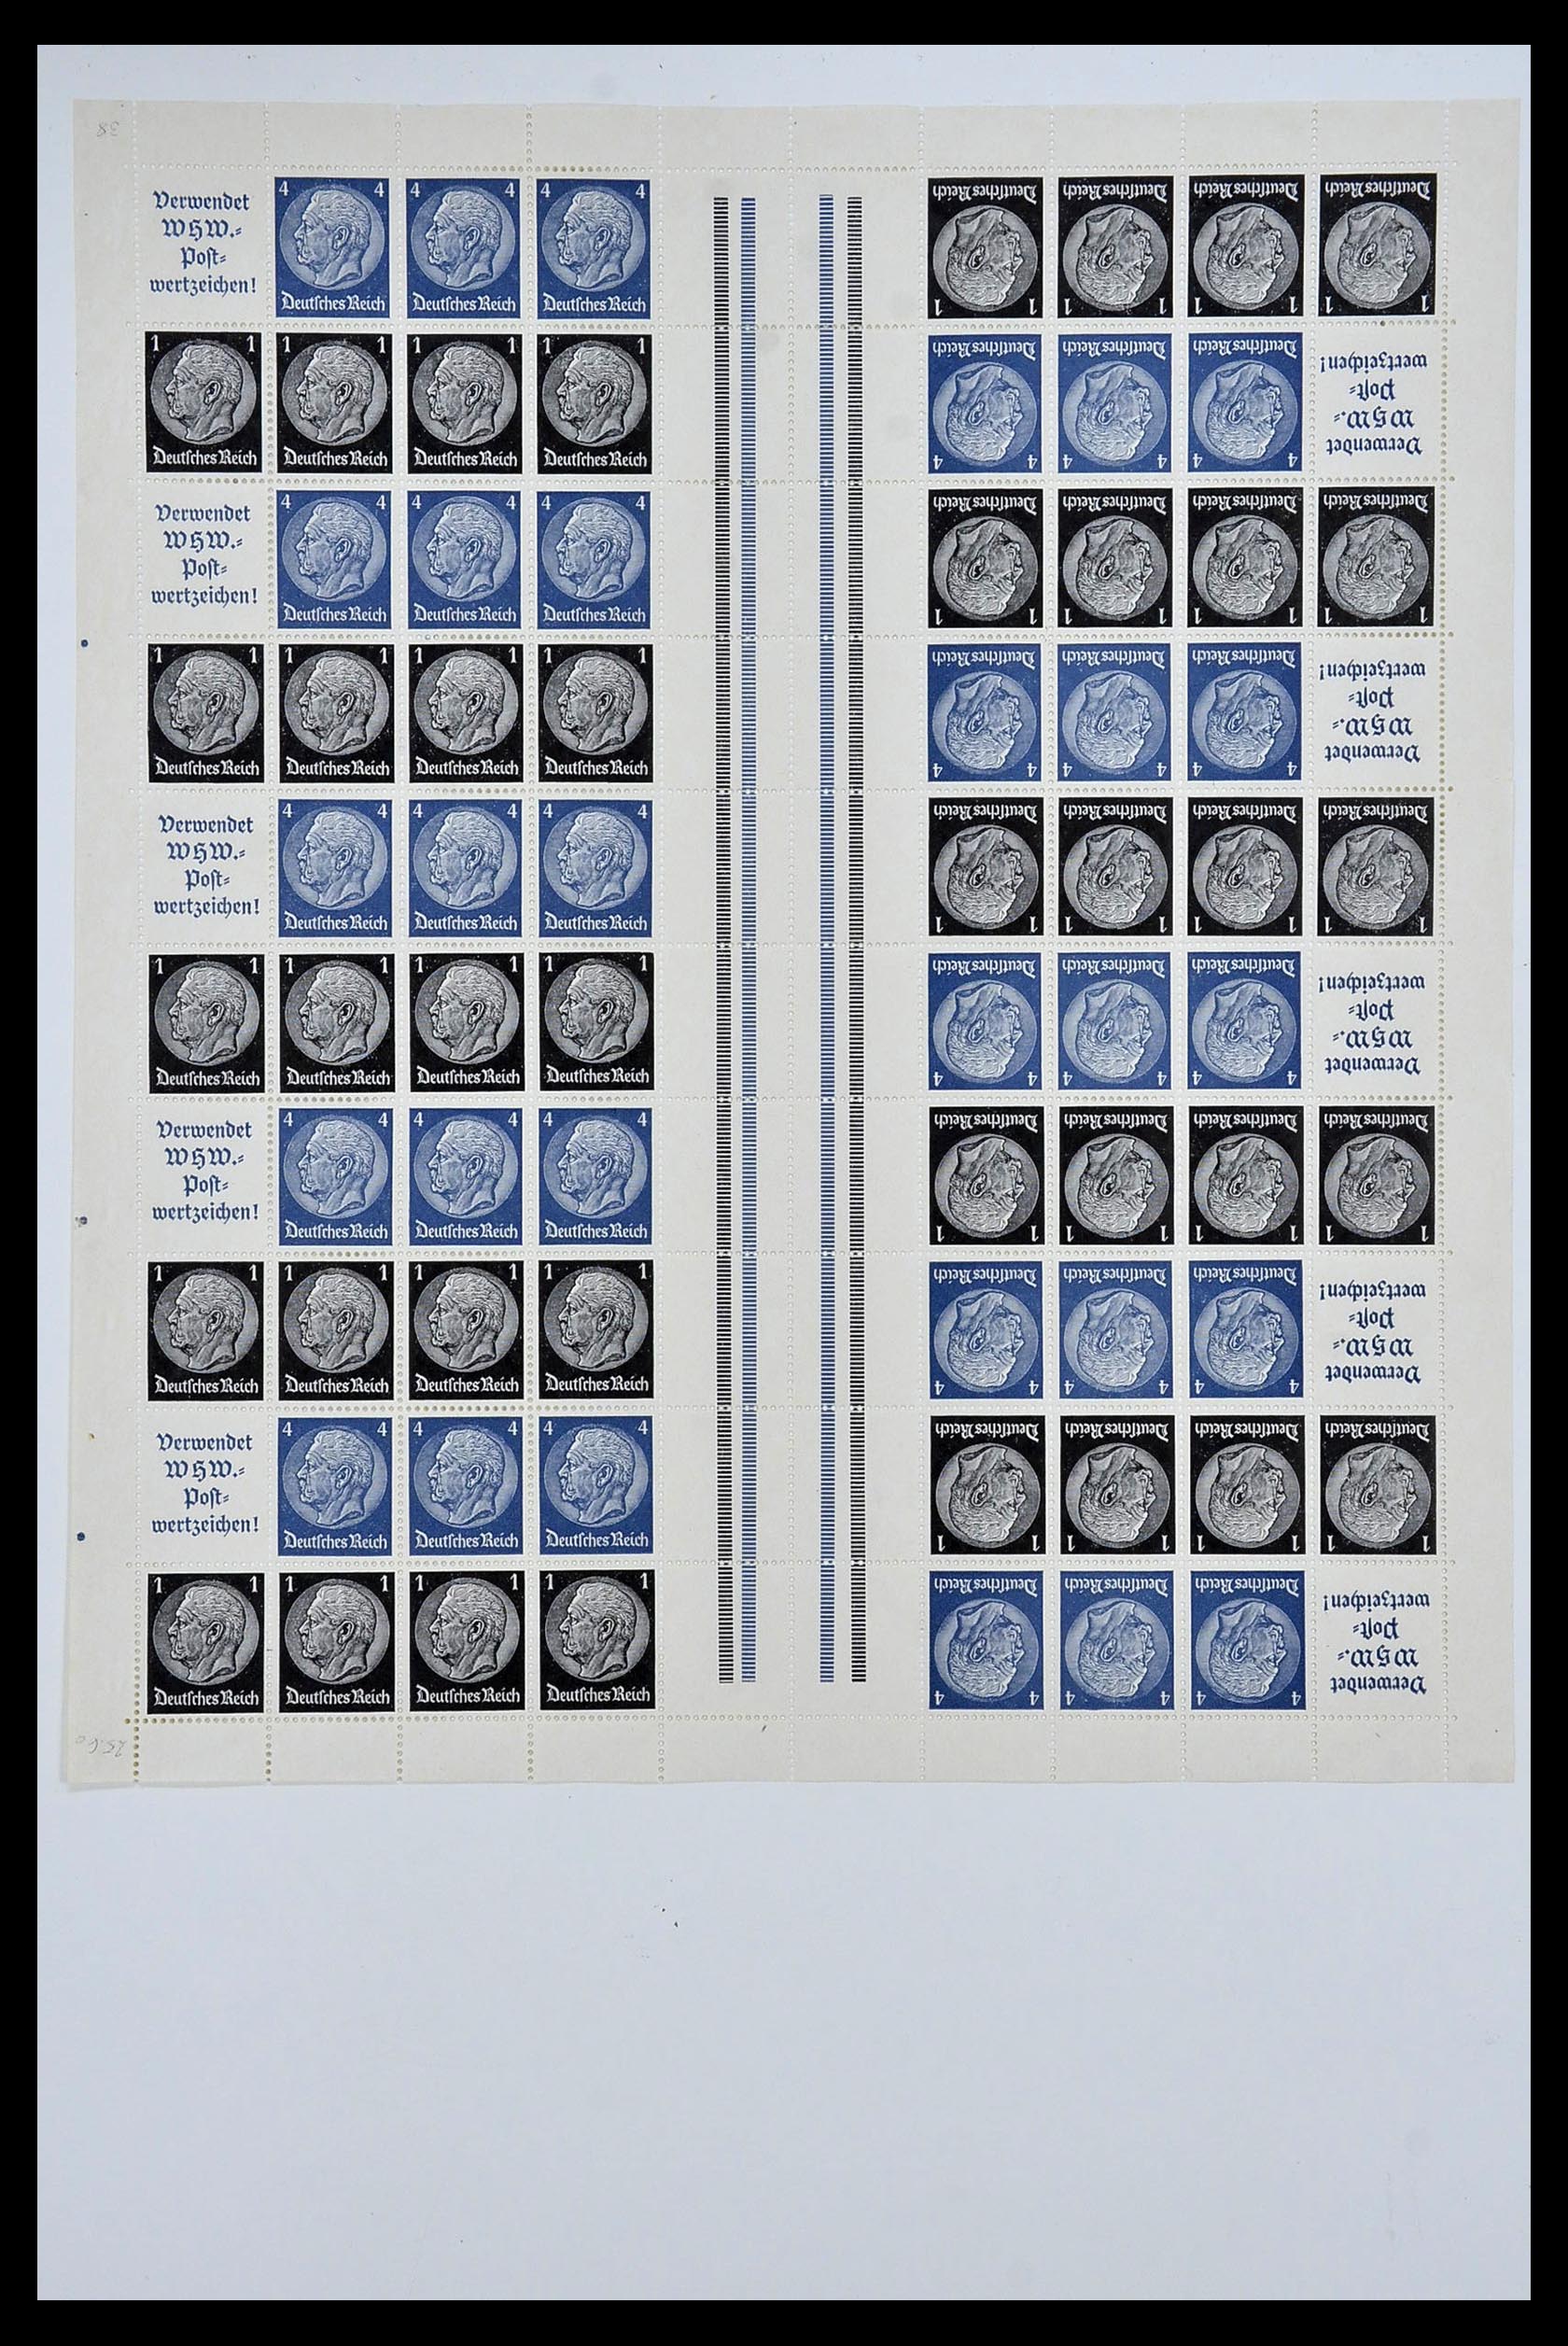 34164 031 - Stamp collection 34164 German Reich Markenheftchenbogen 1933-1942.